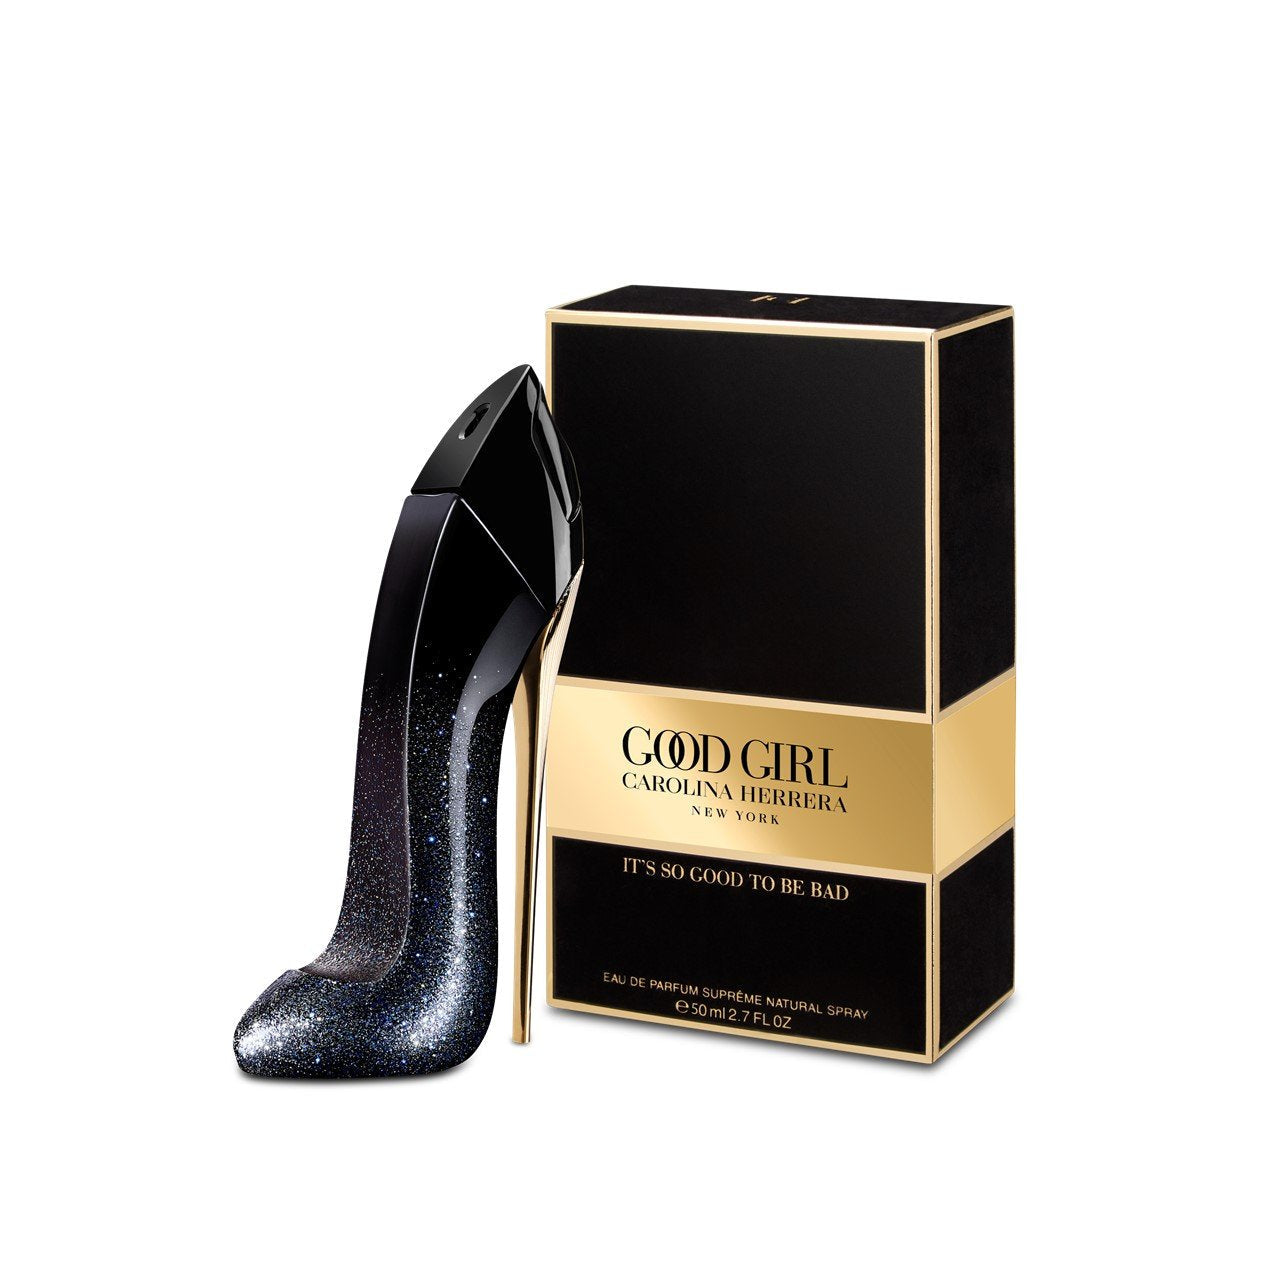 Carolina Herrera Good Girl For Women Eau De Parfum Supreme 50Ml